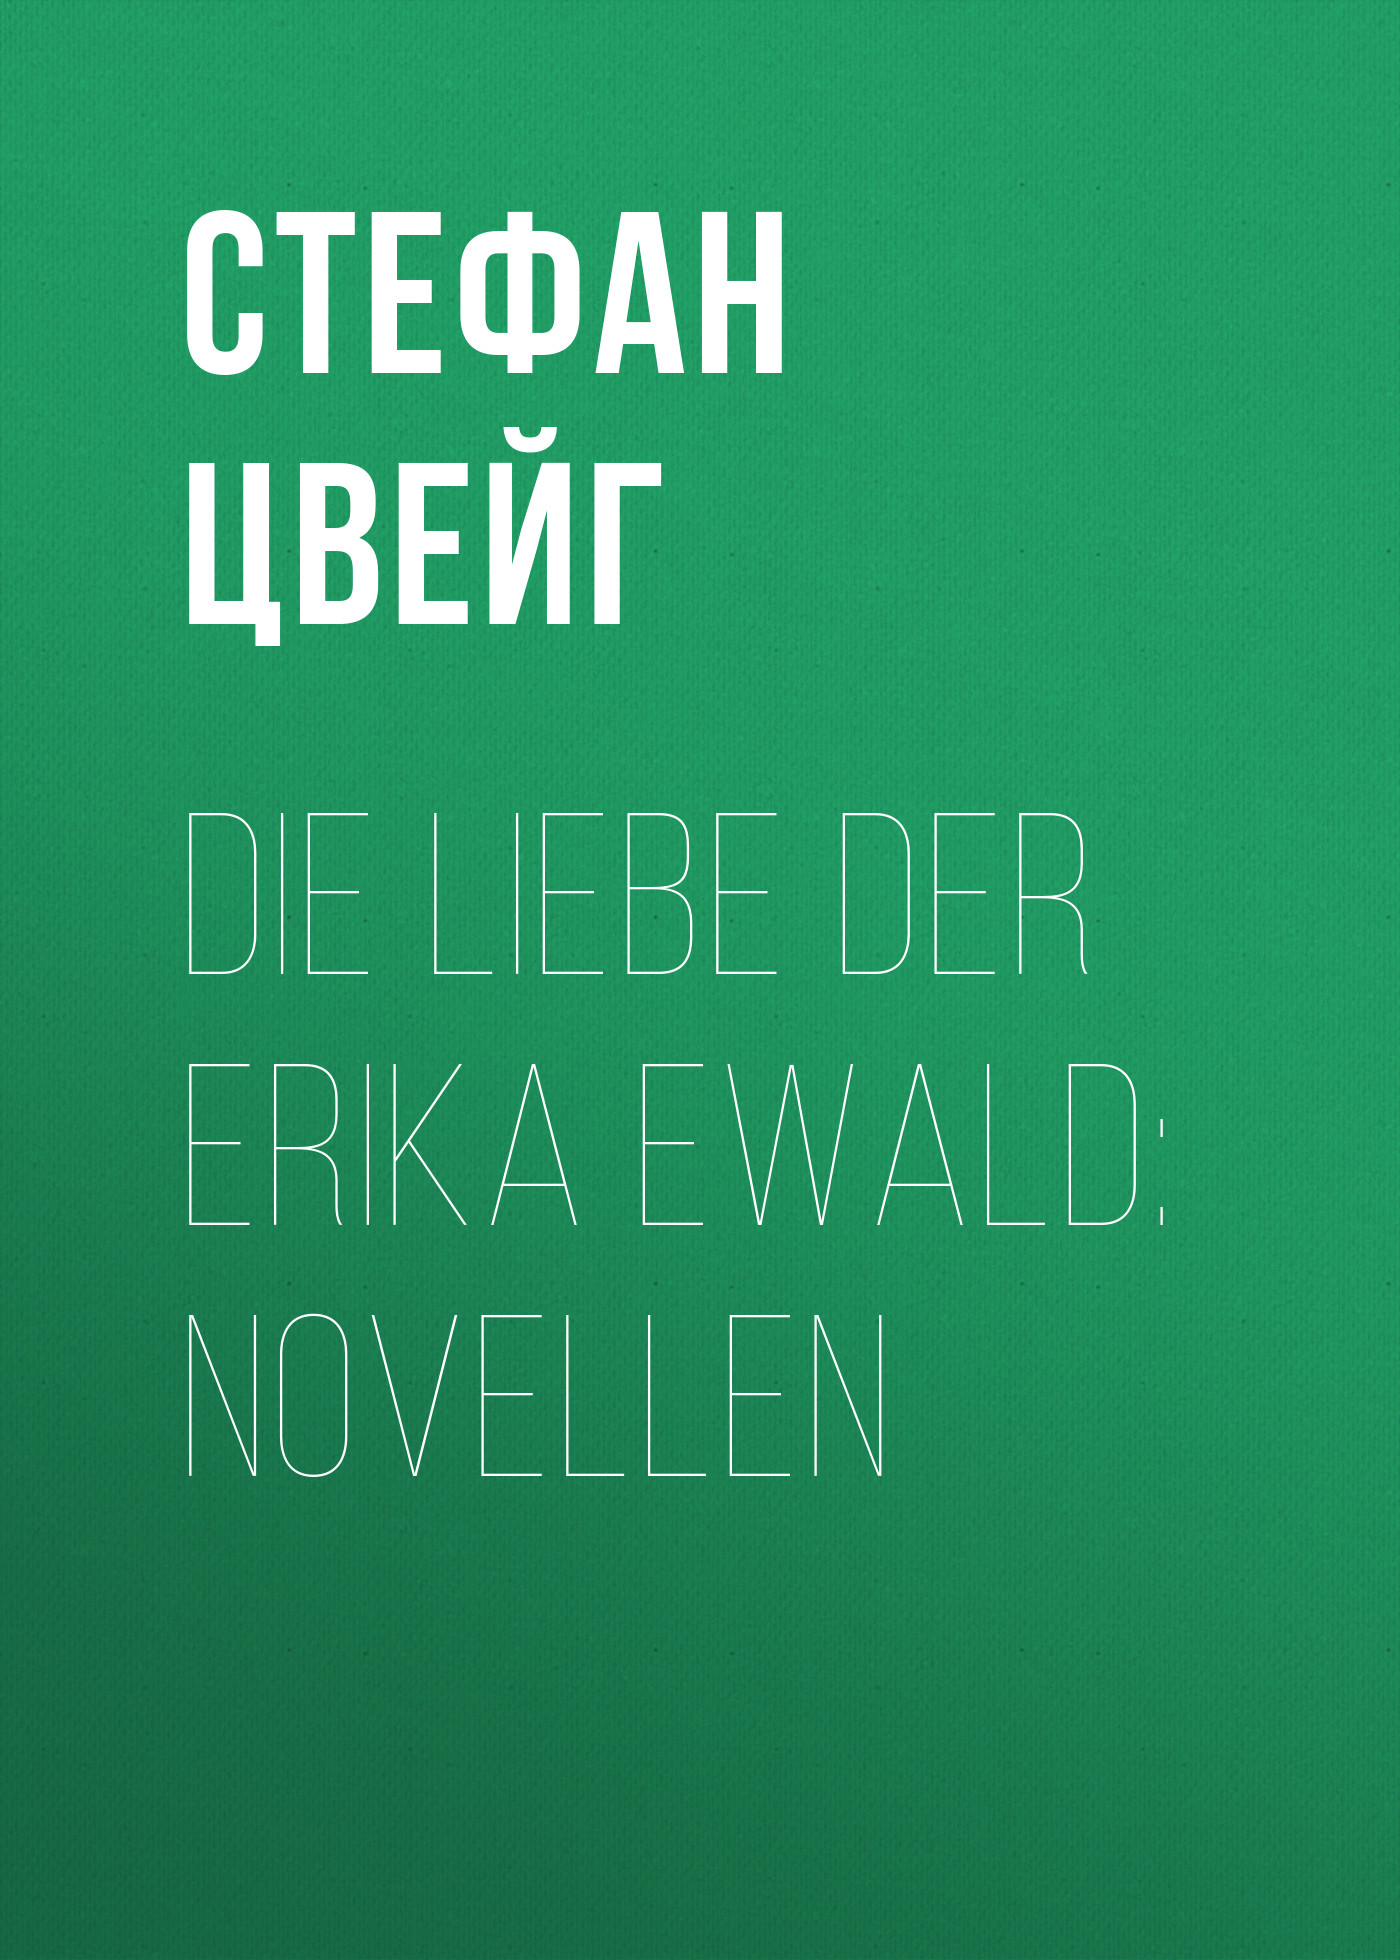 Книга Die Liebe der Erika Ewald из серии , созданная Stefan Zweig, может относится к жанру Зарубежная классика, Зарубежная старинная литература. Стоимость электронной книги Die Liebe der Erika Ewald с идентификатором 36324084 составляет 0 руб.